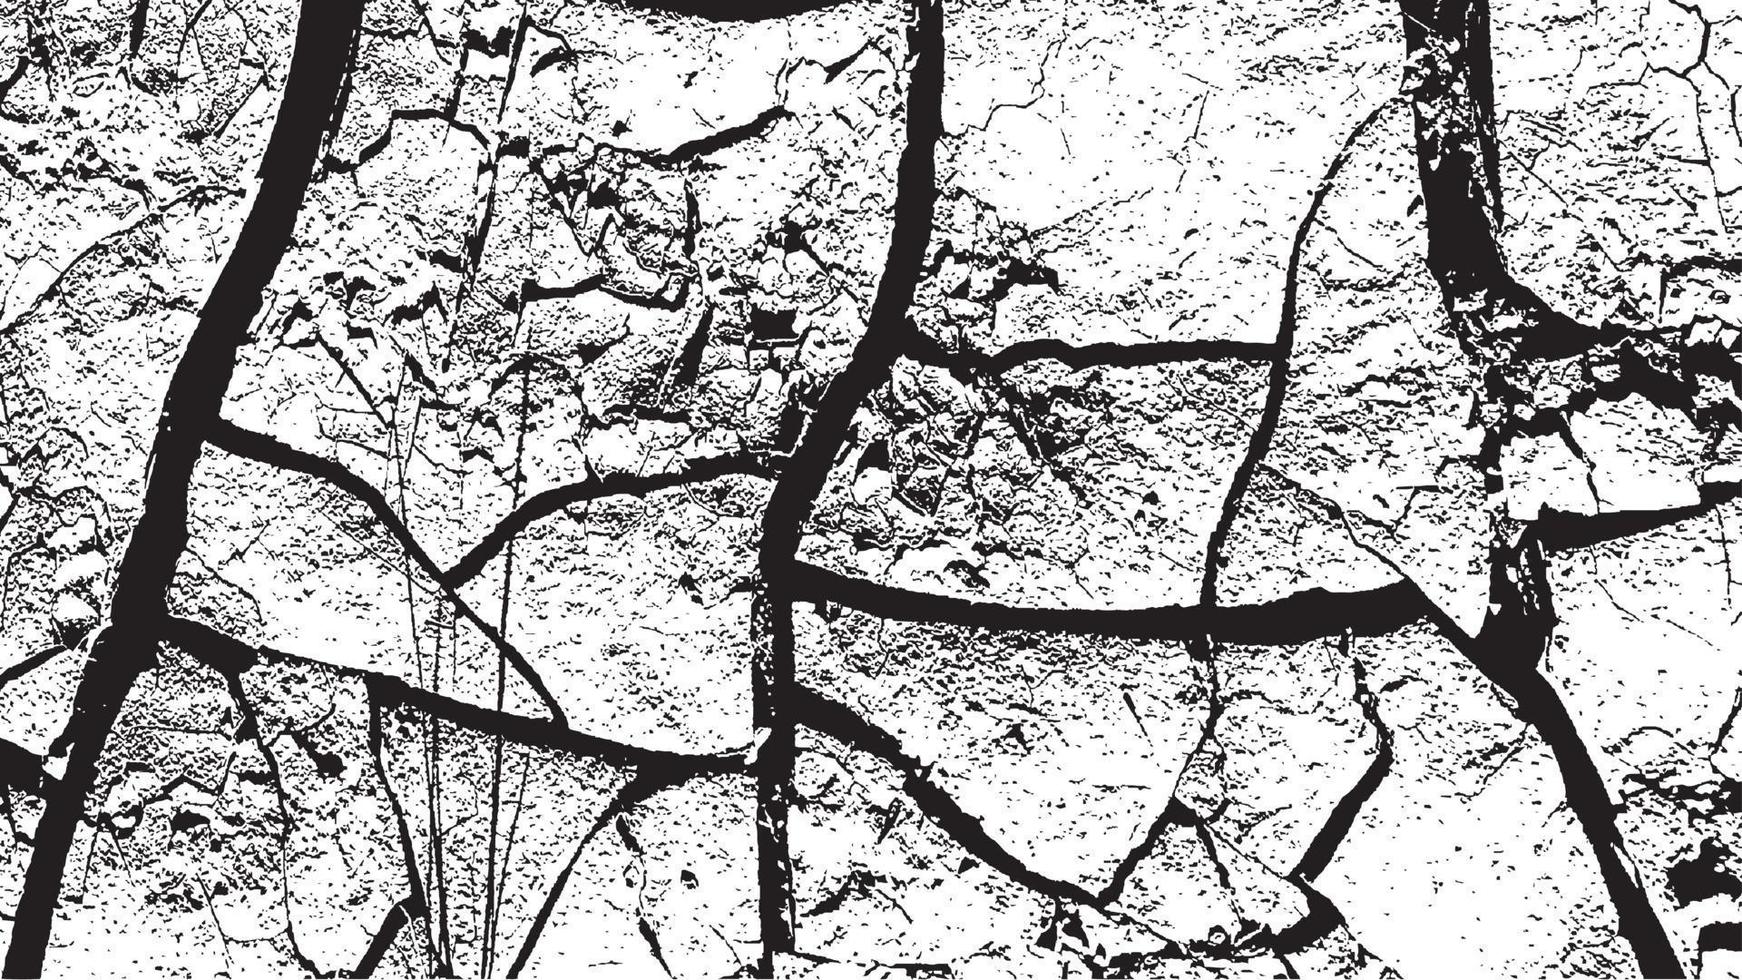 textura de sobreposição de angústia preto e branco. antigo fundo vintage envelhecido. vetor